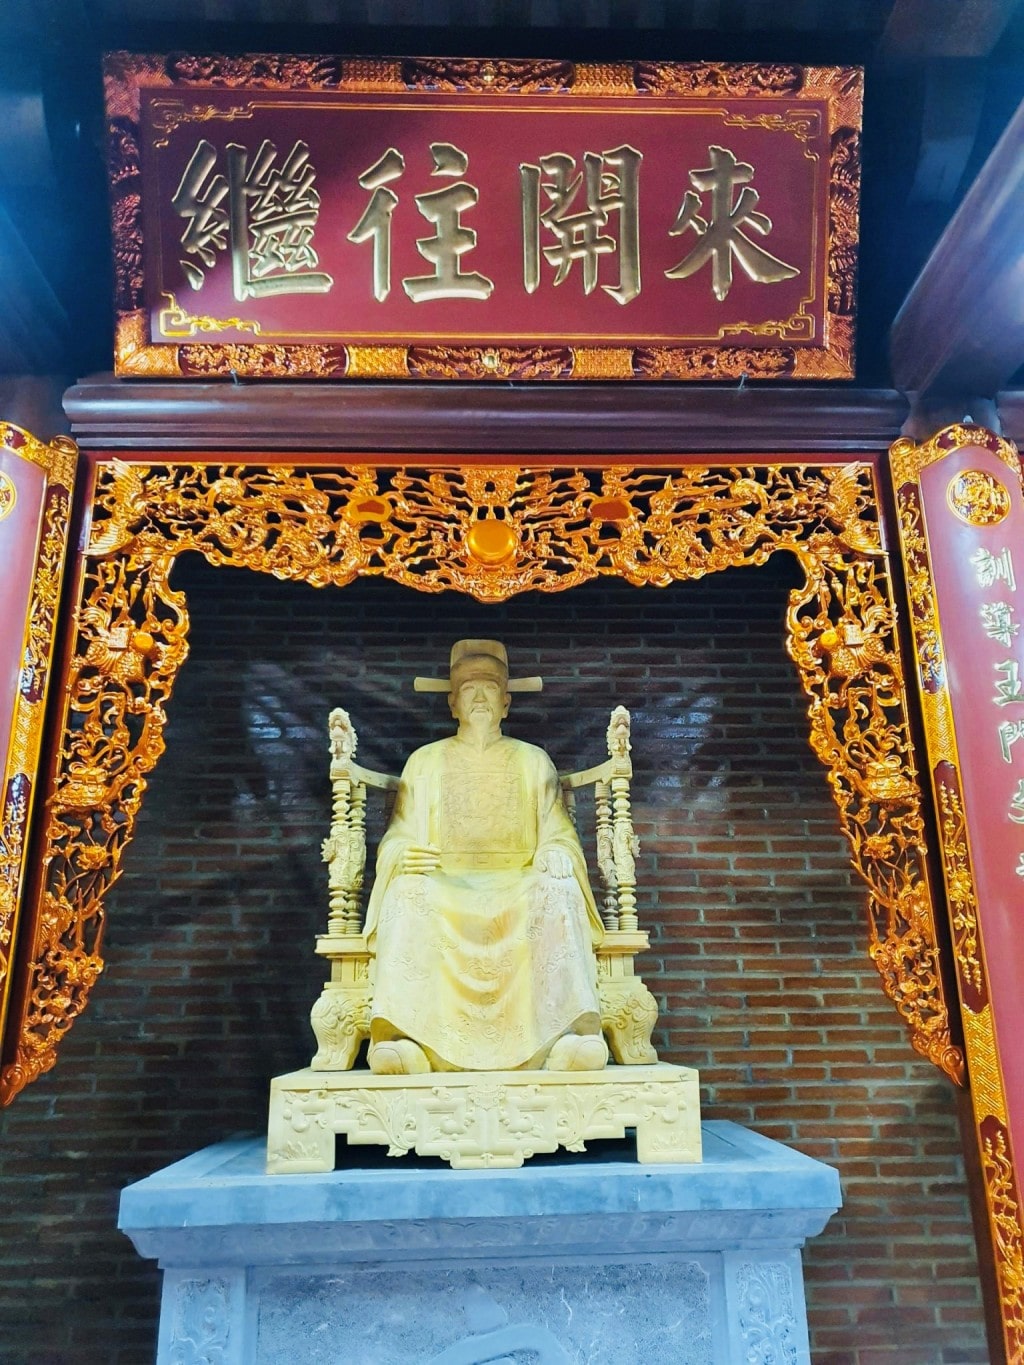 Tuong Tien si Nguyen Y tai Van Tu Thuong Phuc huyen Thuong Tin min - Danh nhân Nguyễn Ý - vị tiến sỹ đầu tiên được khắc tên trên bia đá Văn miếu Huế